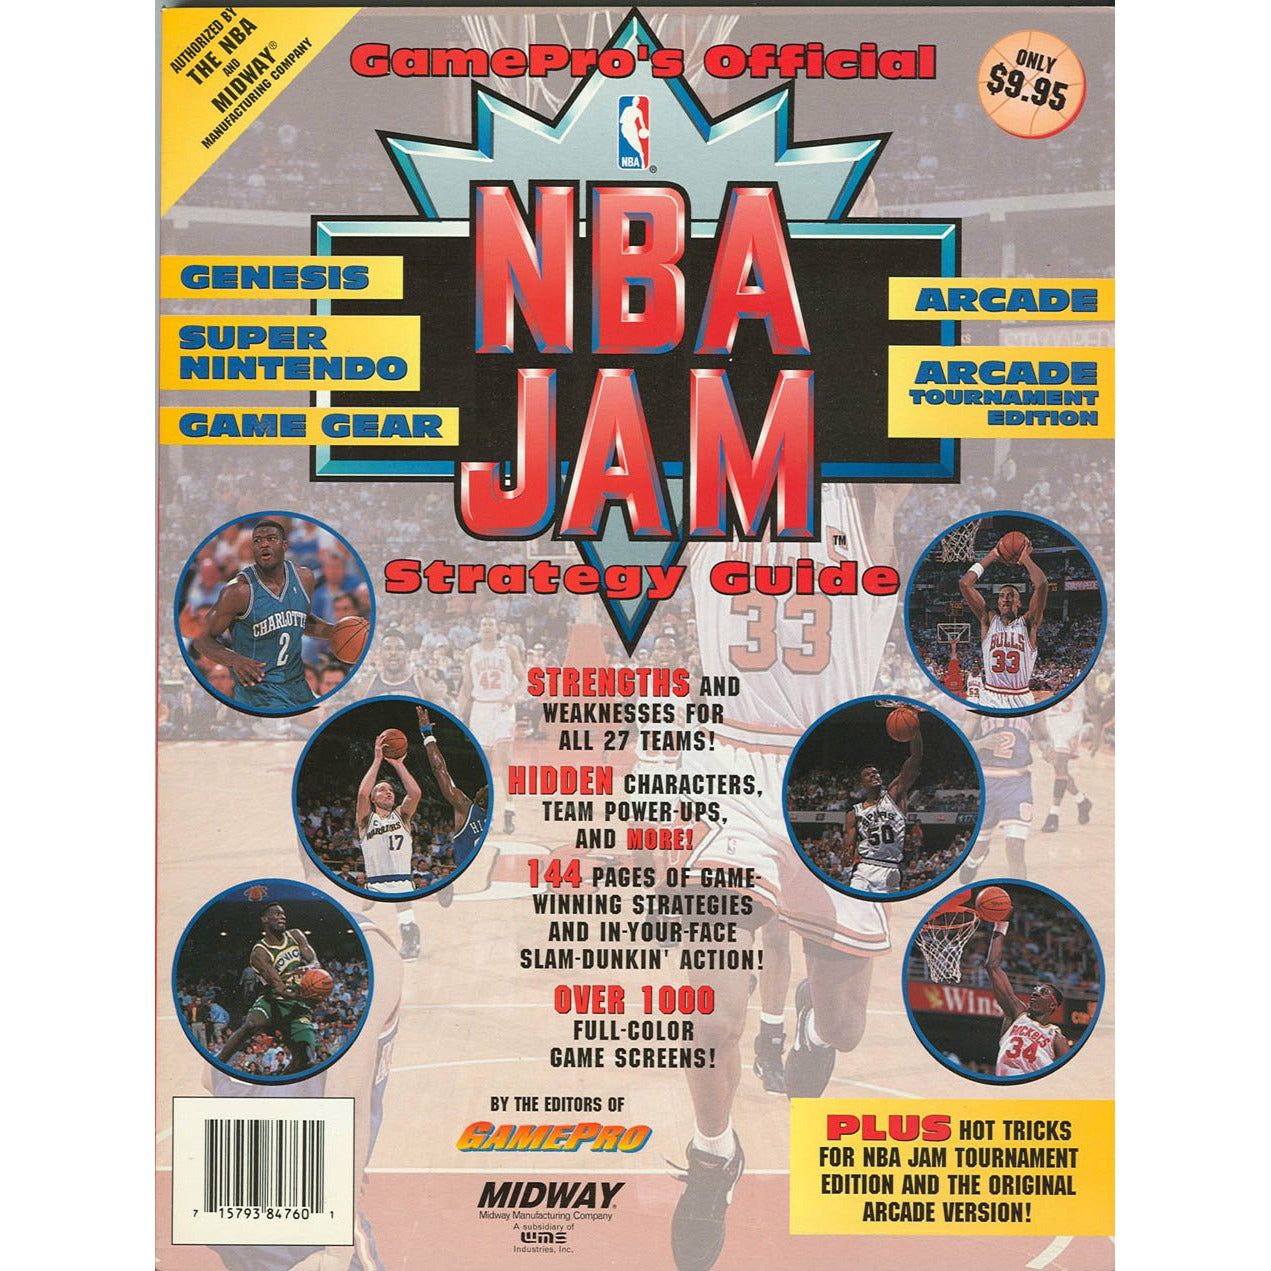 STRAT - Guide stratégique NBA JAM officiel de GamePro